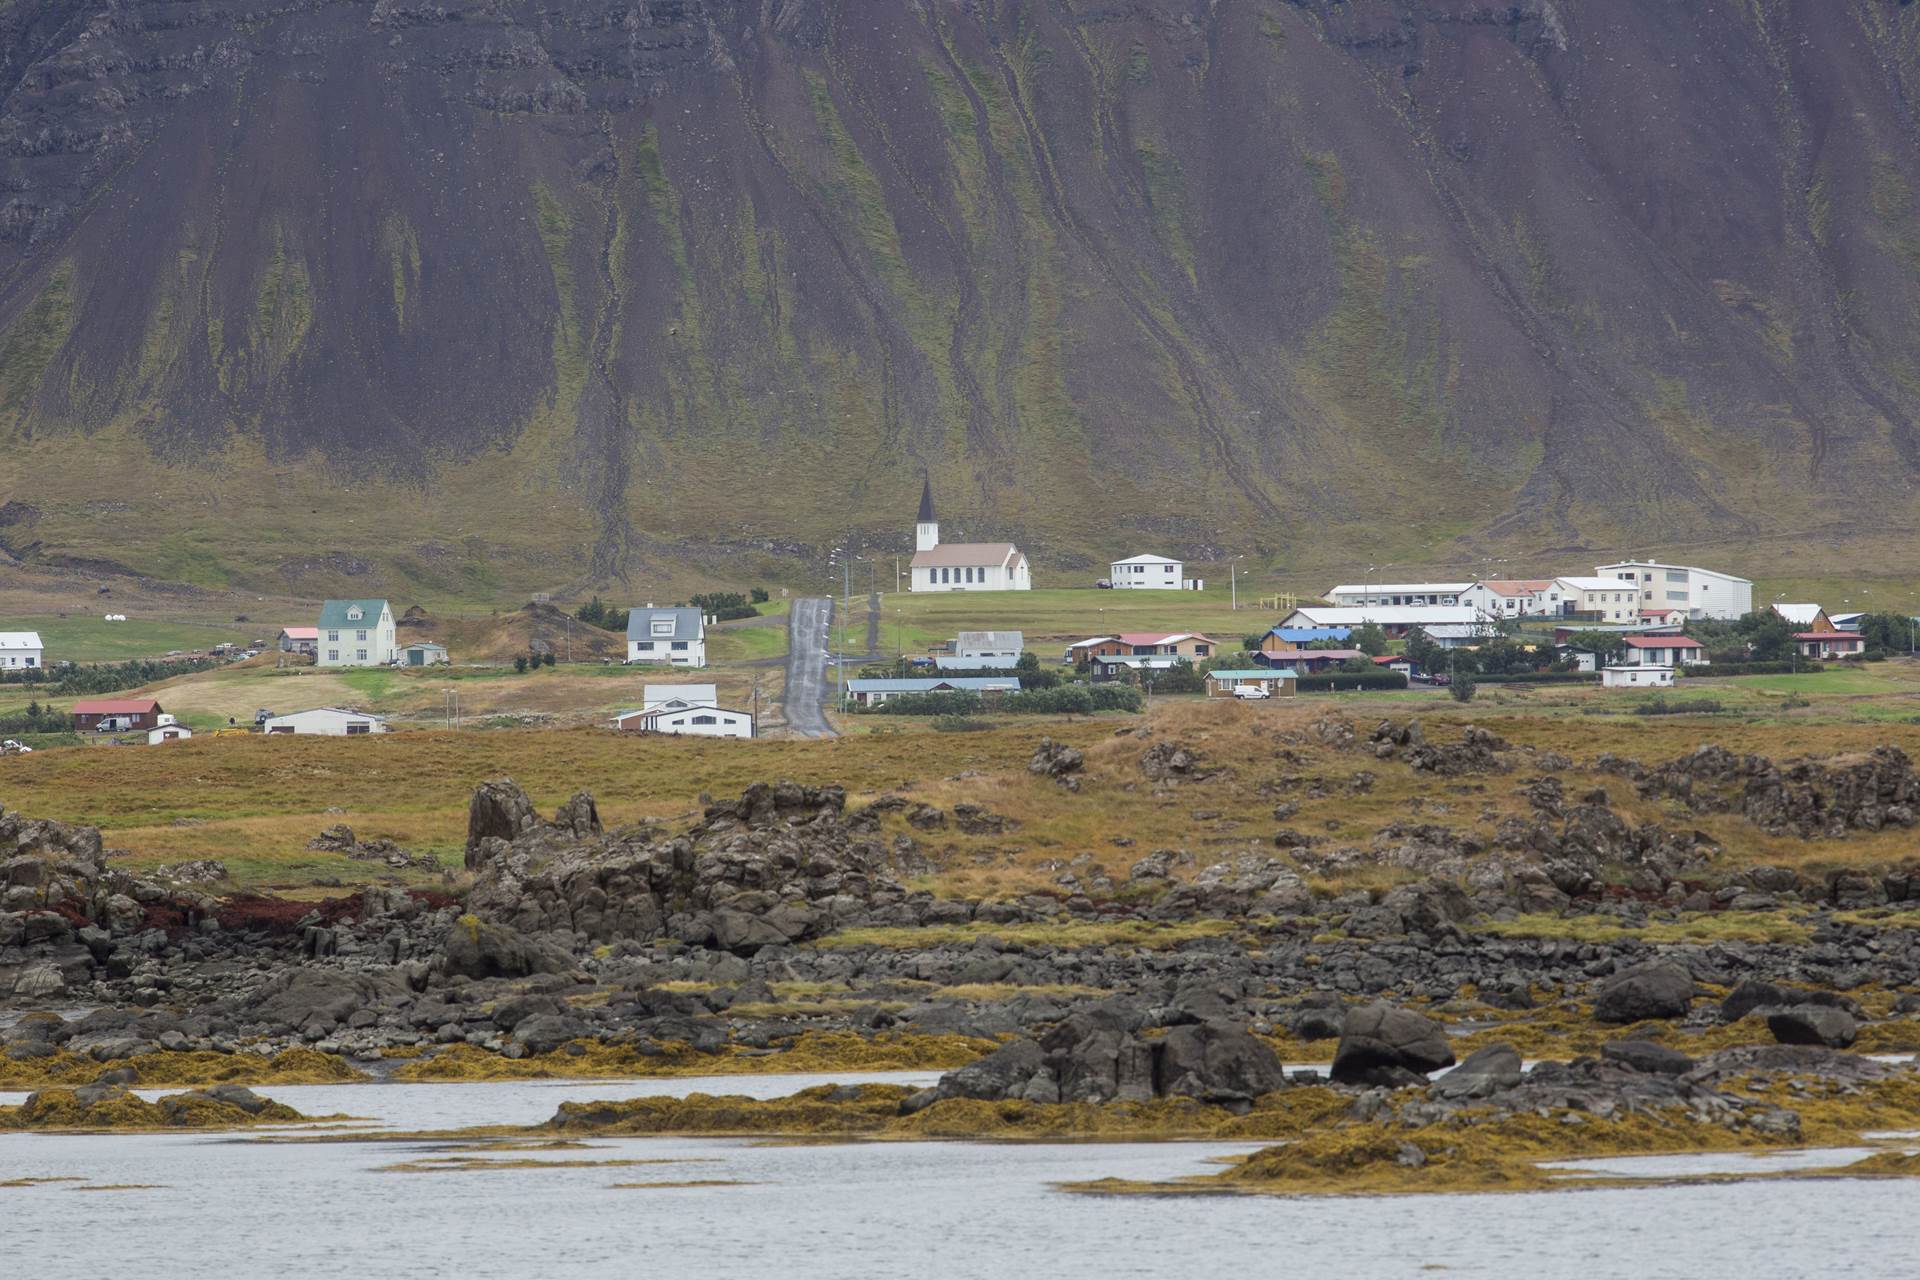 Opnað fyrir umsóknir um styrki í verkefninu Ísland ljóstengt - mynd